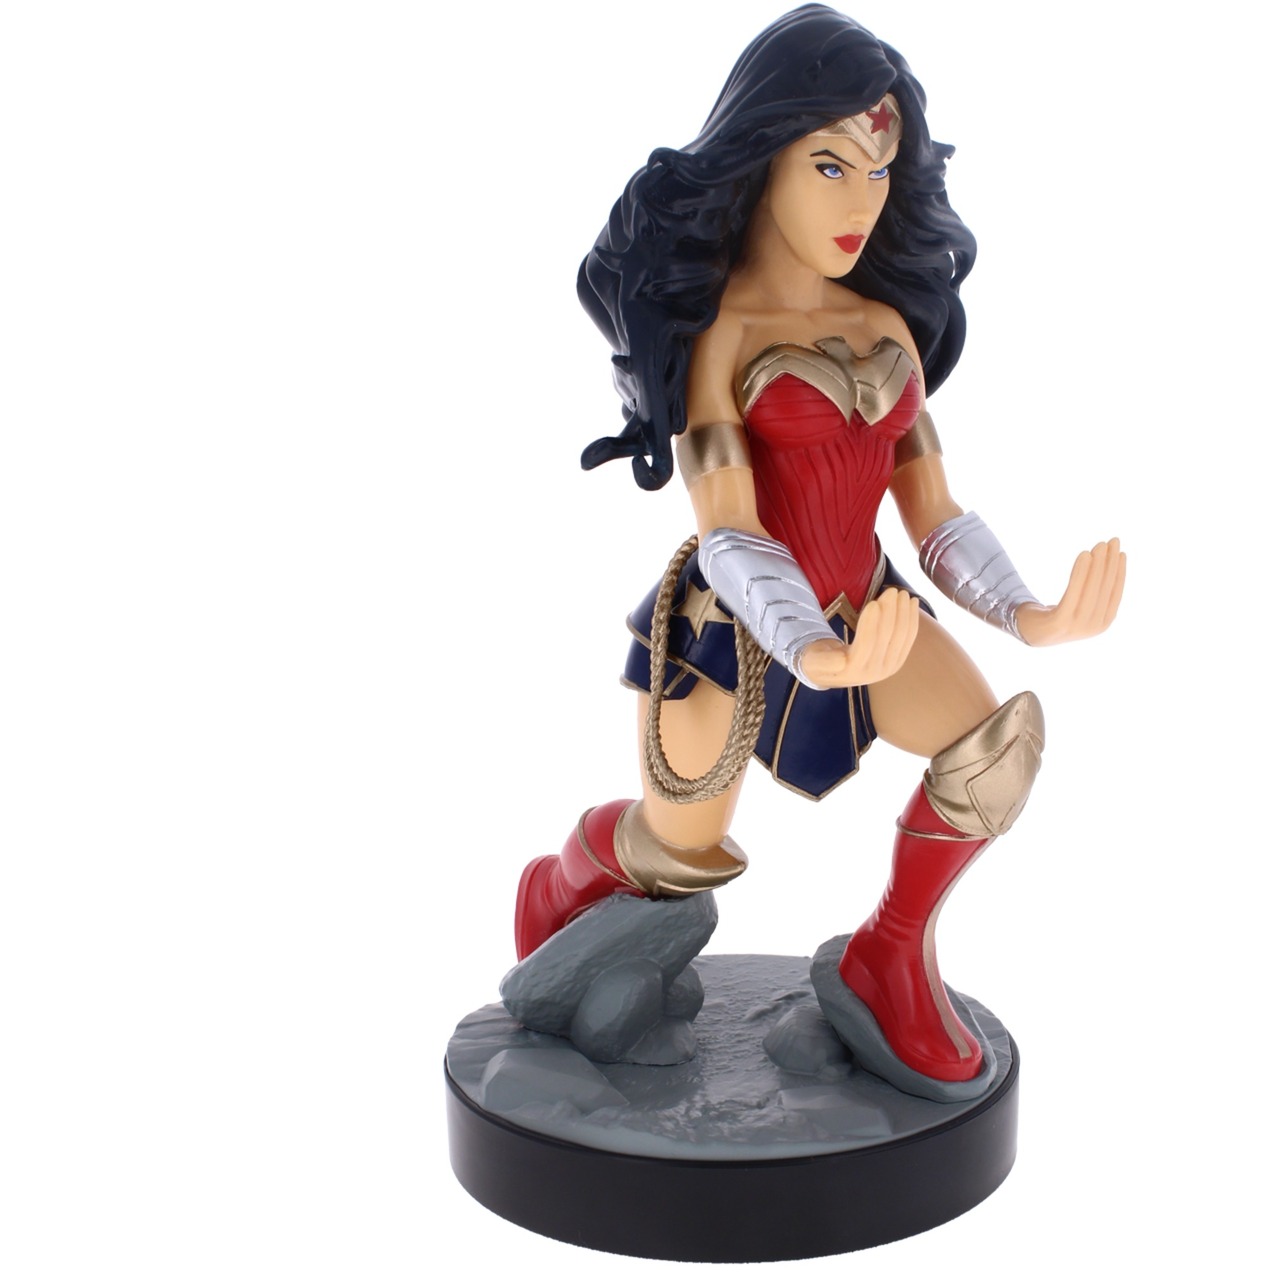 Image of Alternate - Wonder Woman DC, Halterung online einkaufen bei Alternate